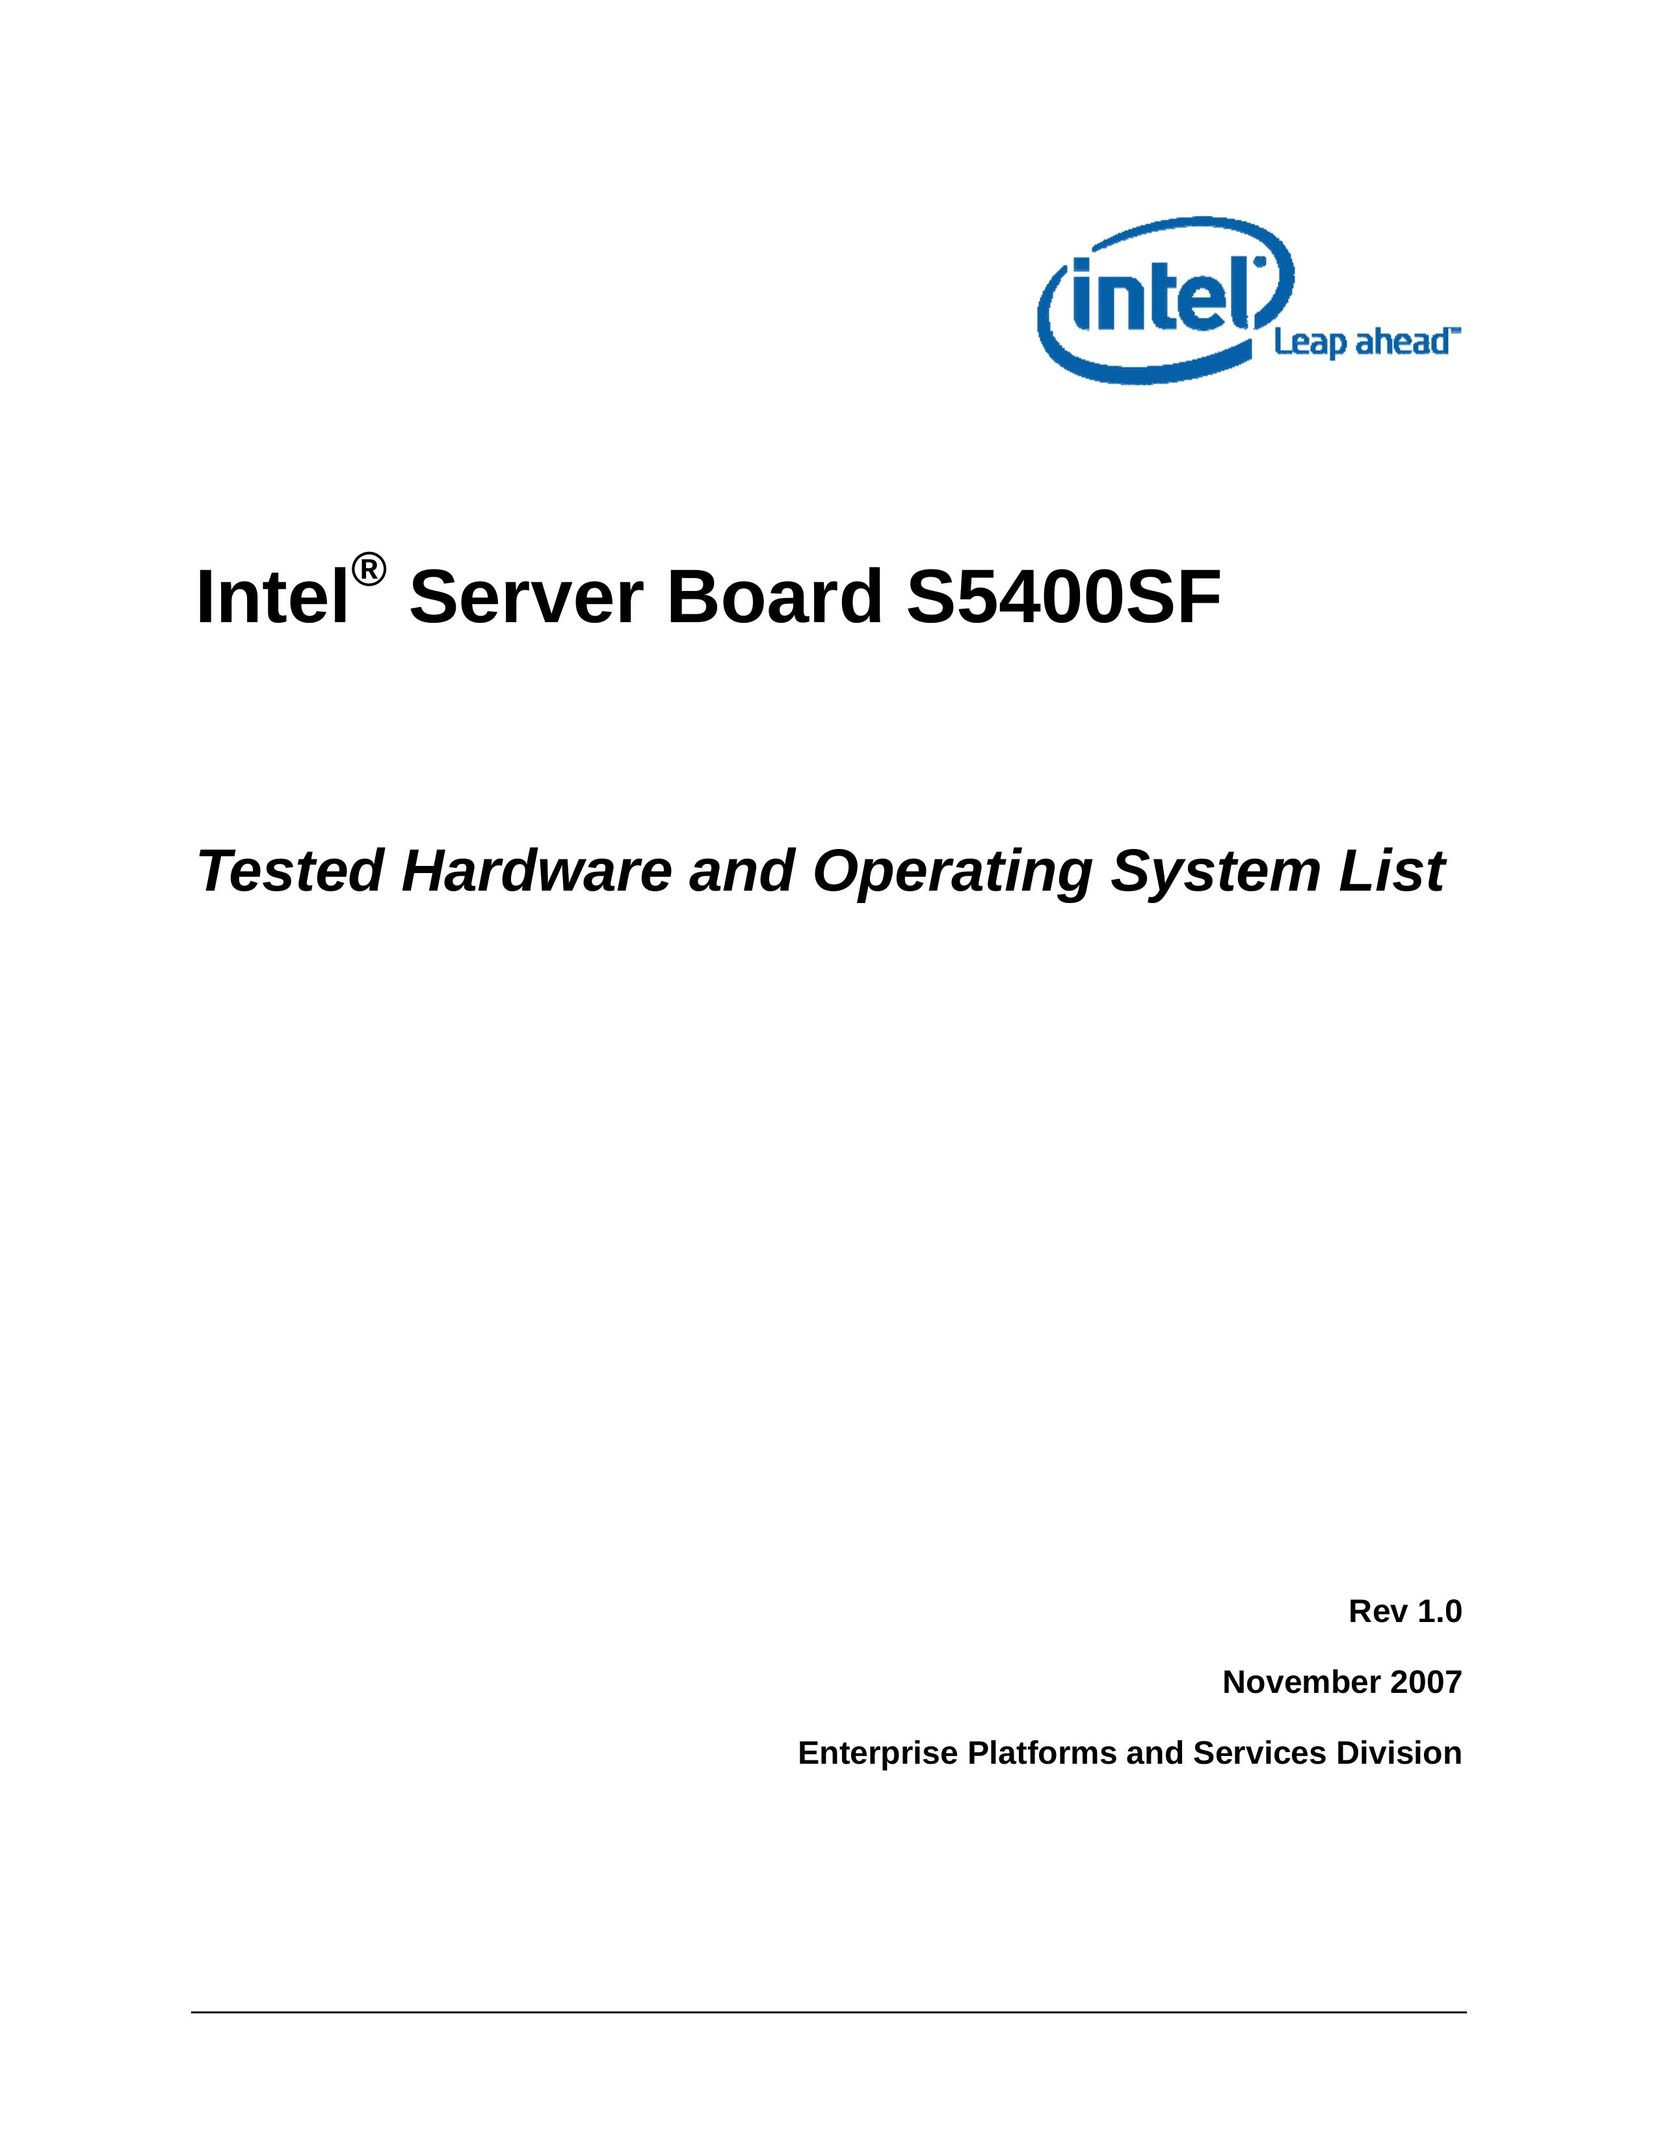 Intel S5400SF Server User Manual